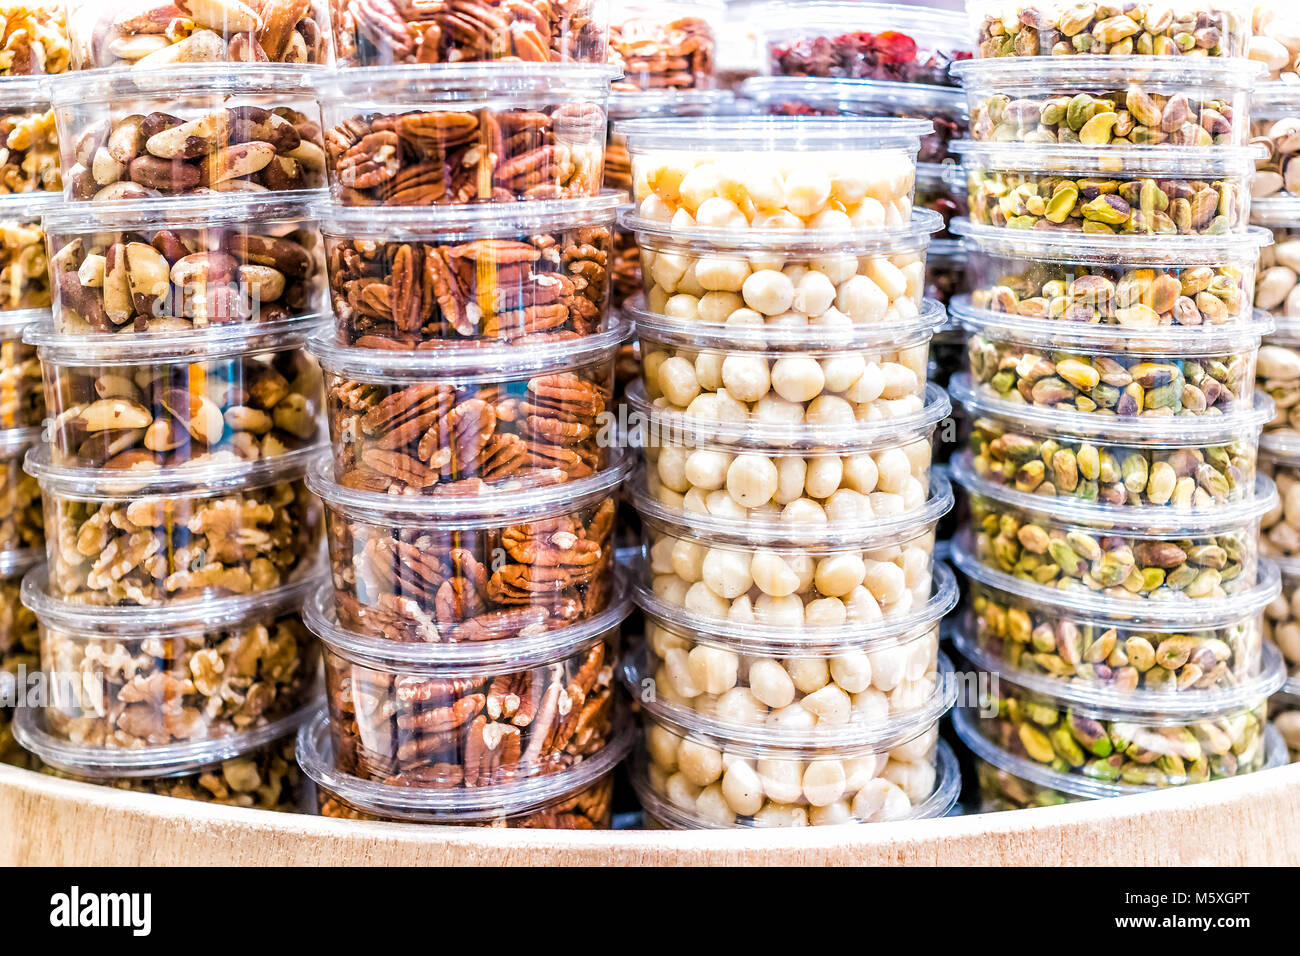 Vielen verpackten Samen, Nüsse, in Kunststoffbehältern auf Anzeige auf Store shop Regale, macadamia getrocknet, geröstet, Pistazien ohne Schale, Pekannüsse, Brasilien, walnu Stockfoto